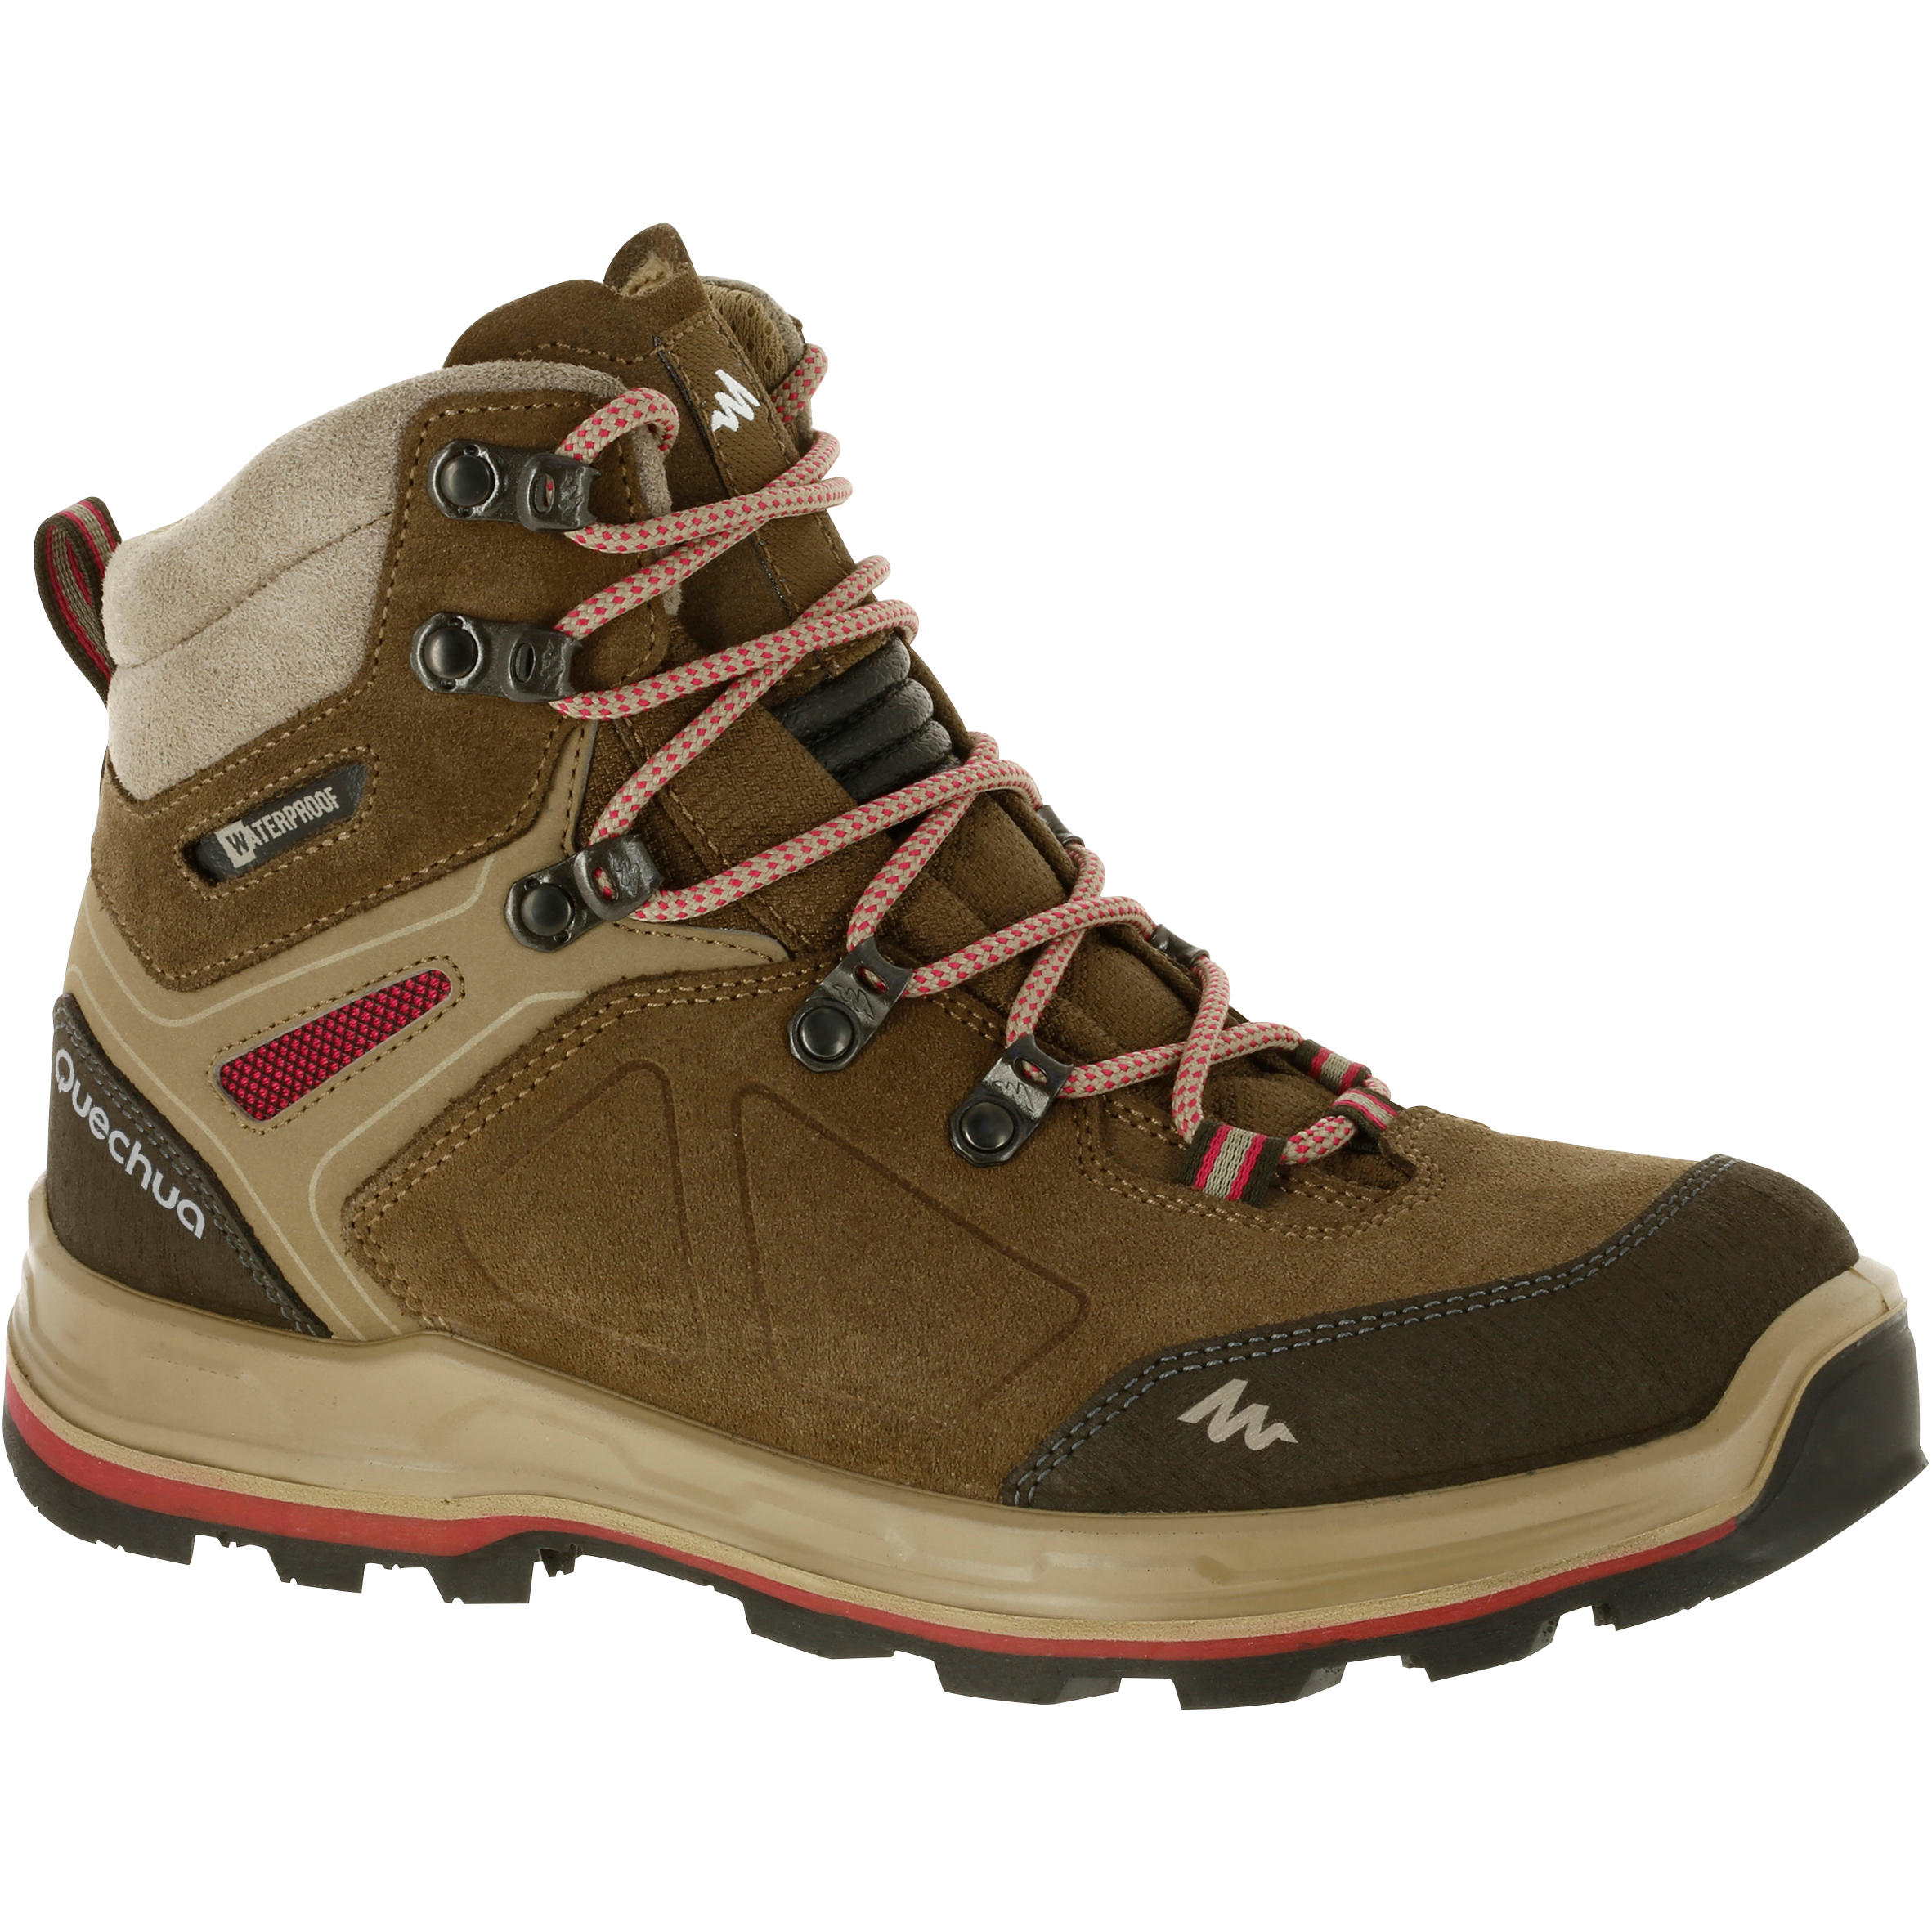 Women Trekking shoes Online|Buy Trek 100 trekking Shoes by Decathlon